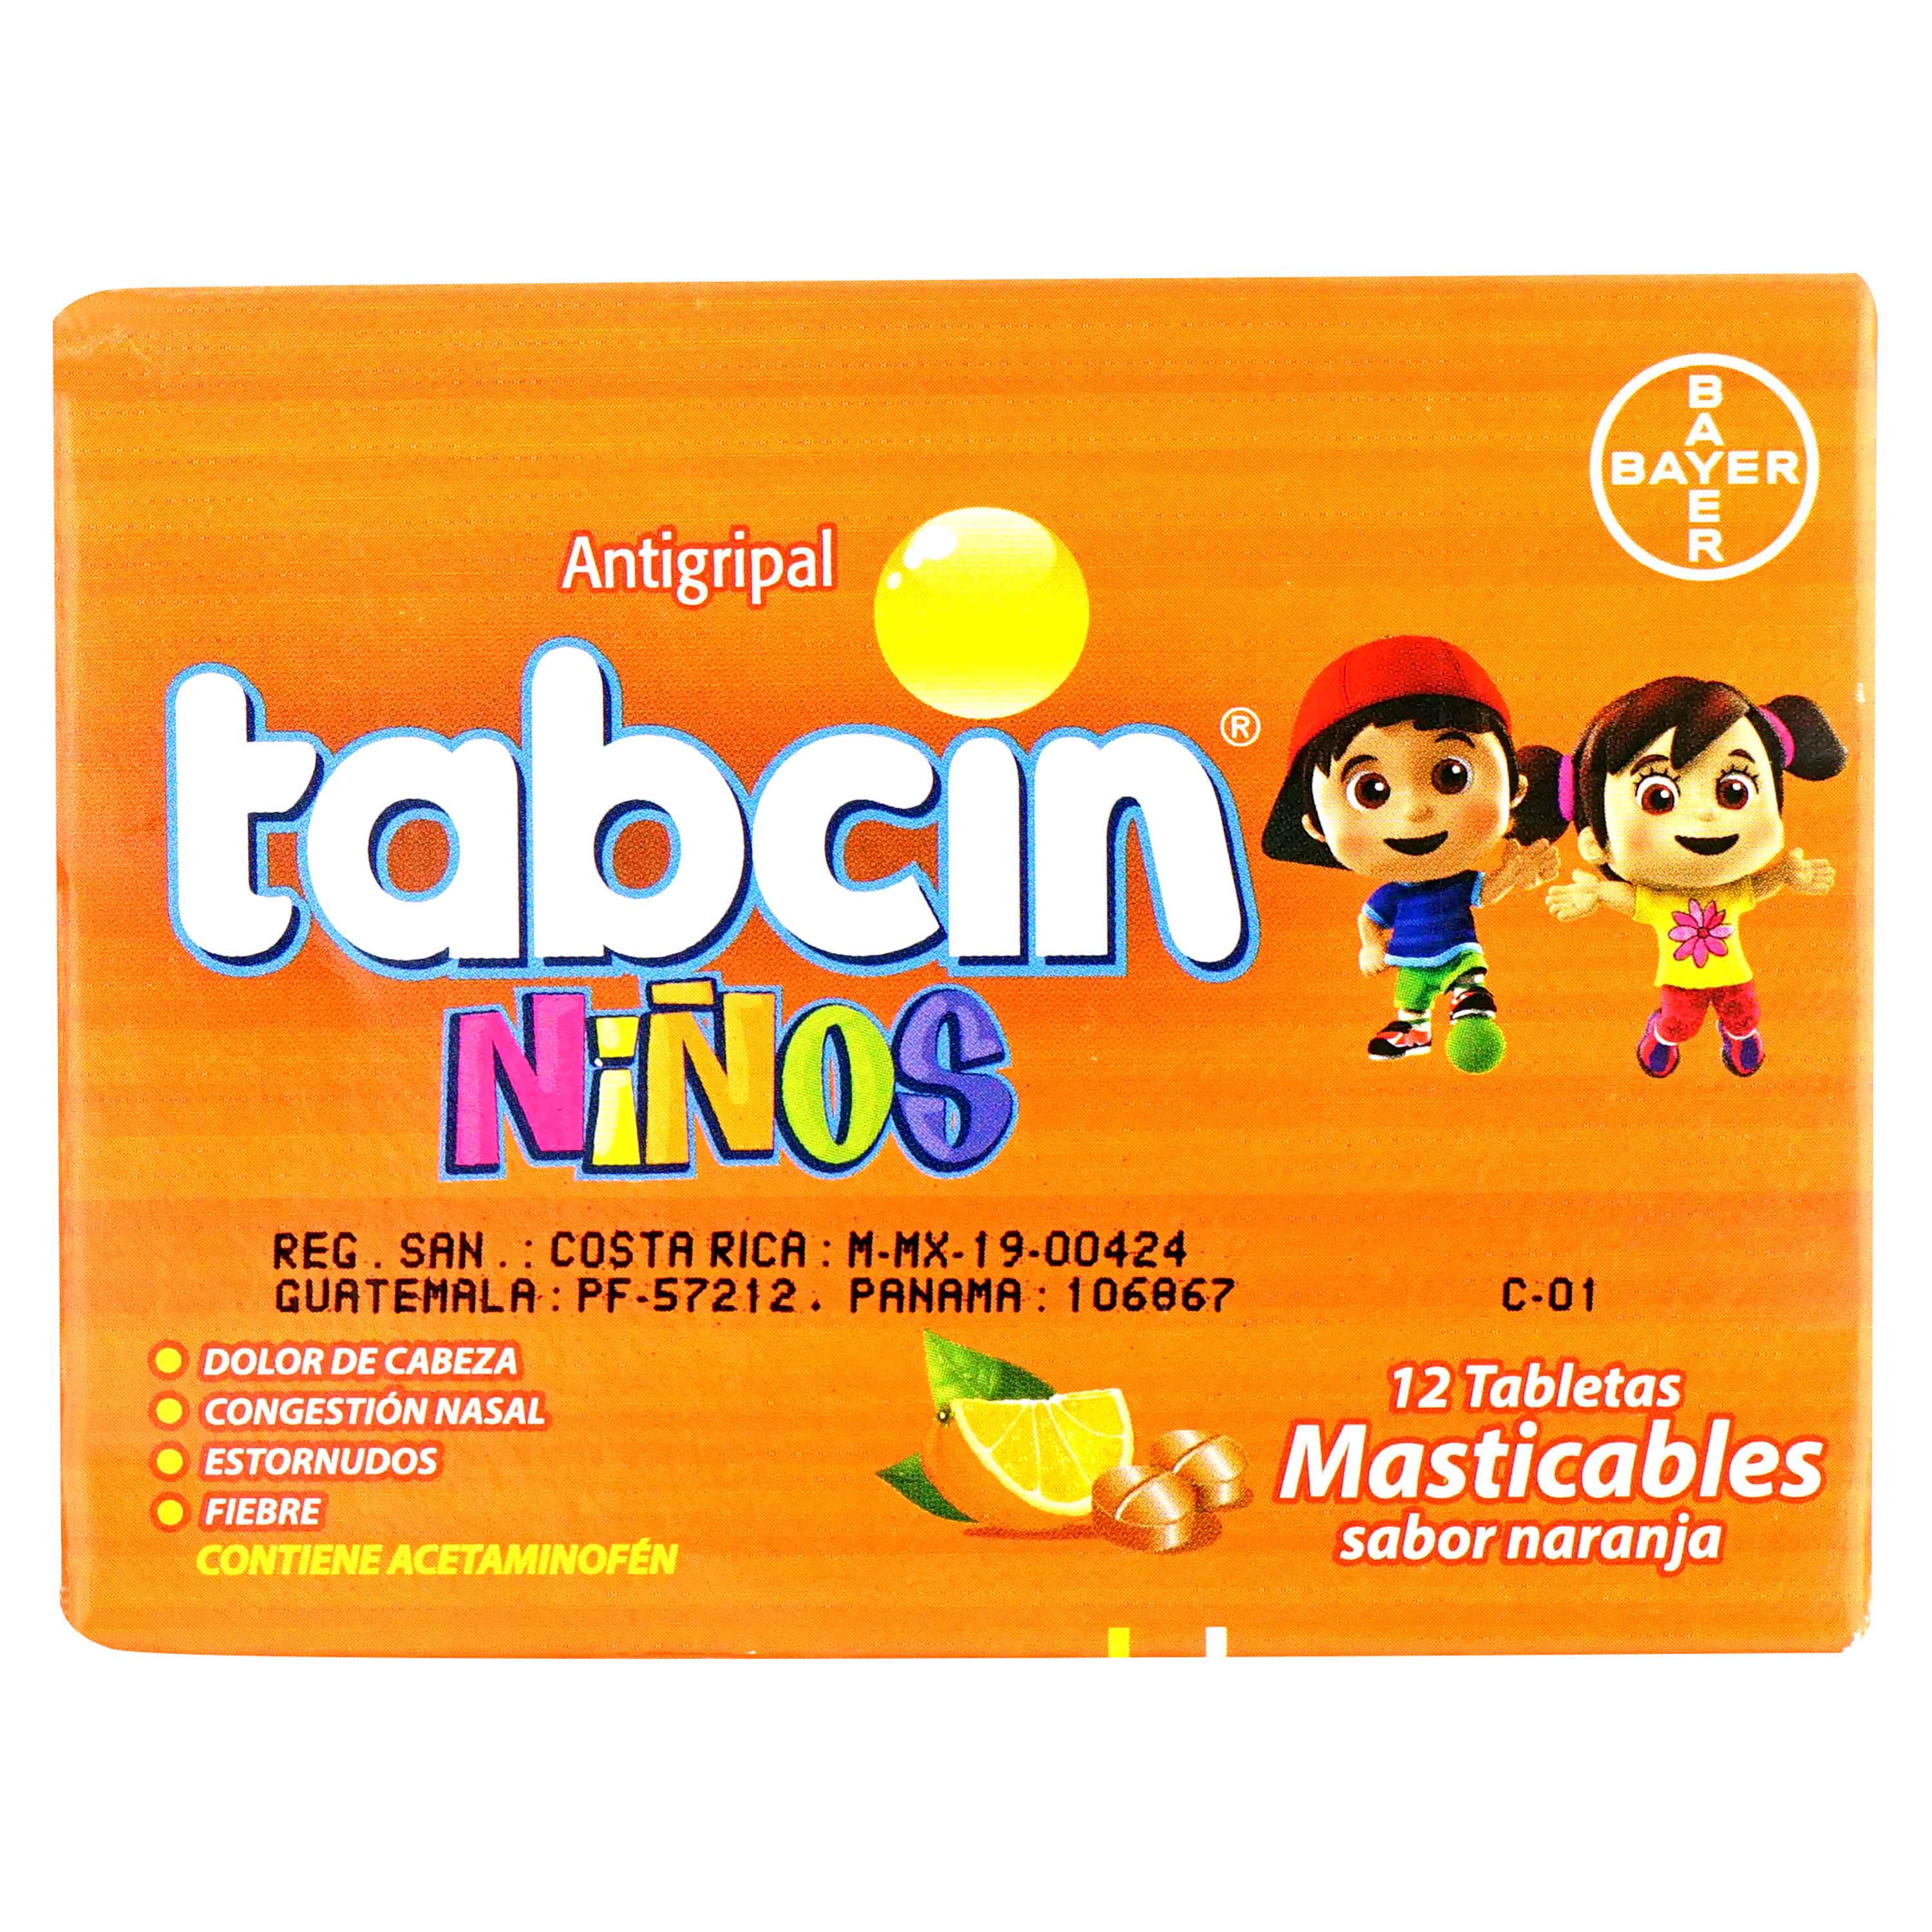 Tabcin-Ni-os-Masticables-Caja-X-12-Tabletas-1-932